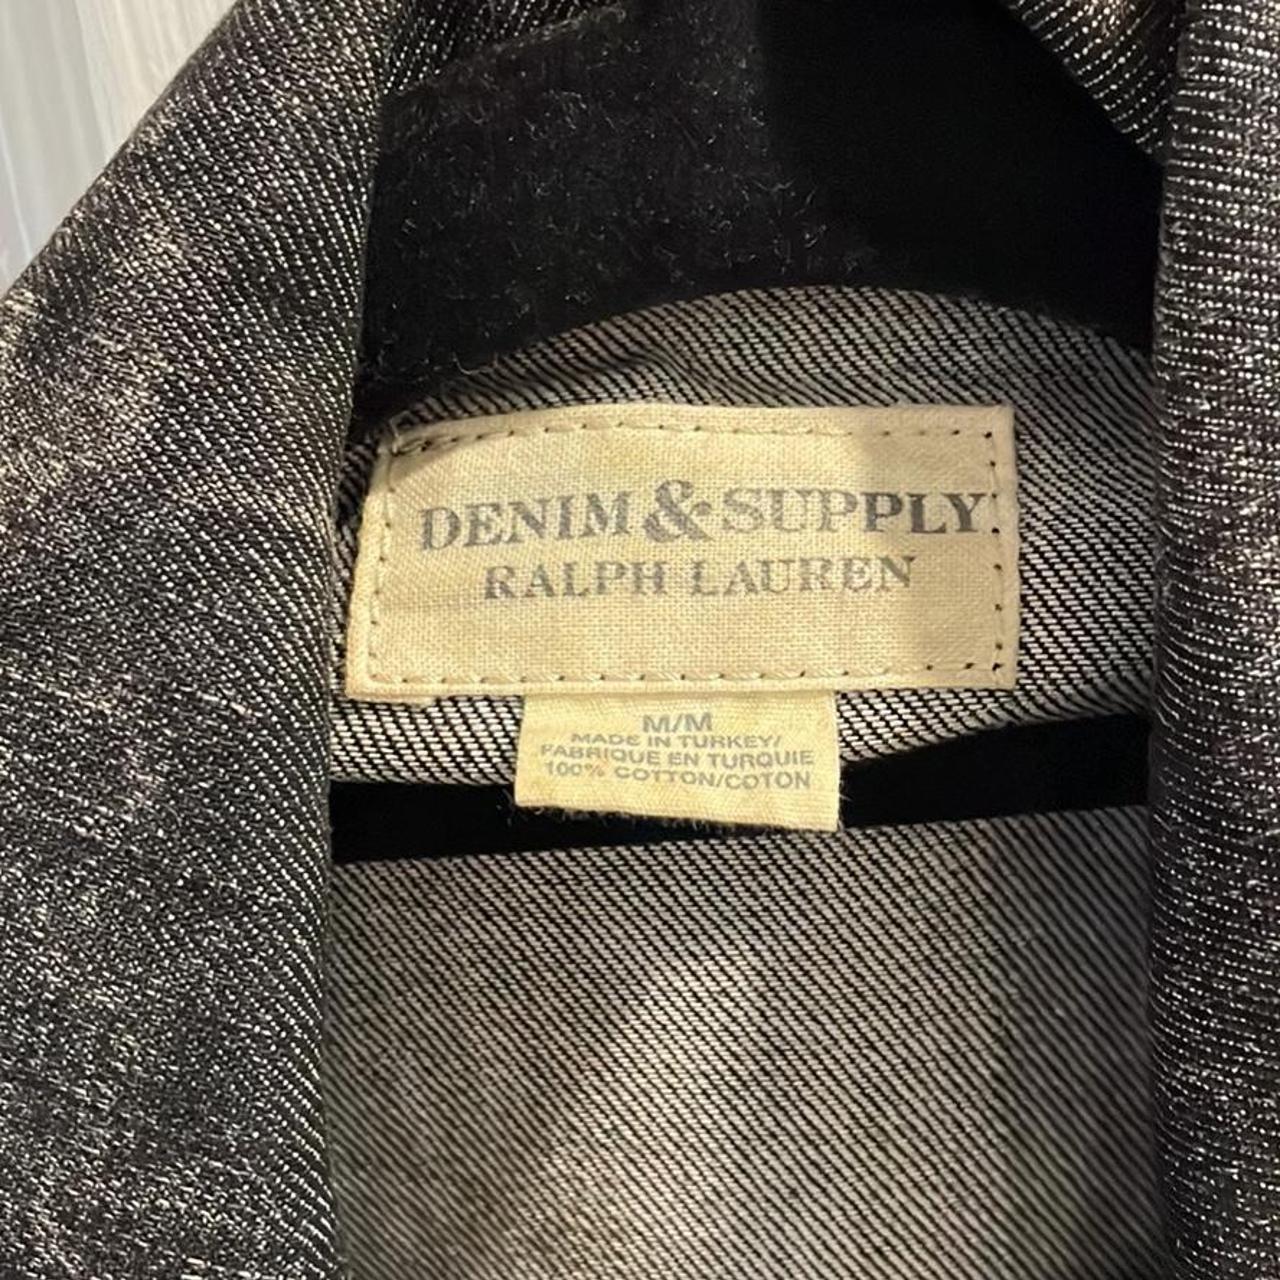 Ralph Lauren denim & supply Size M. Only worn a... - Depop